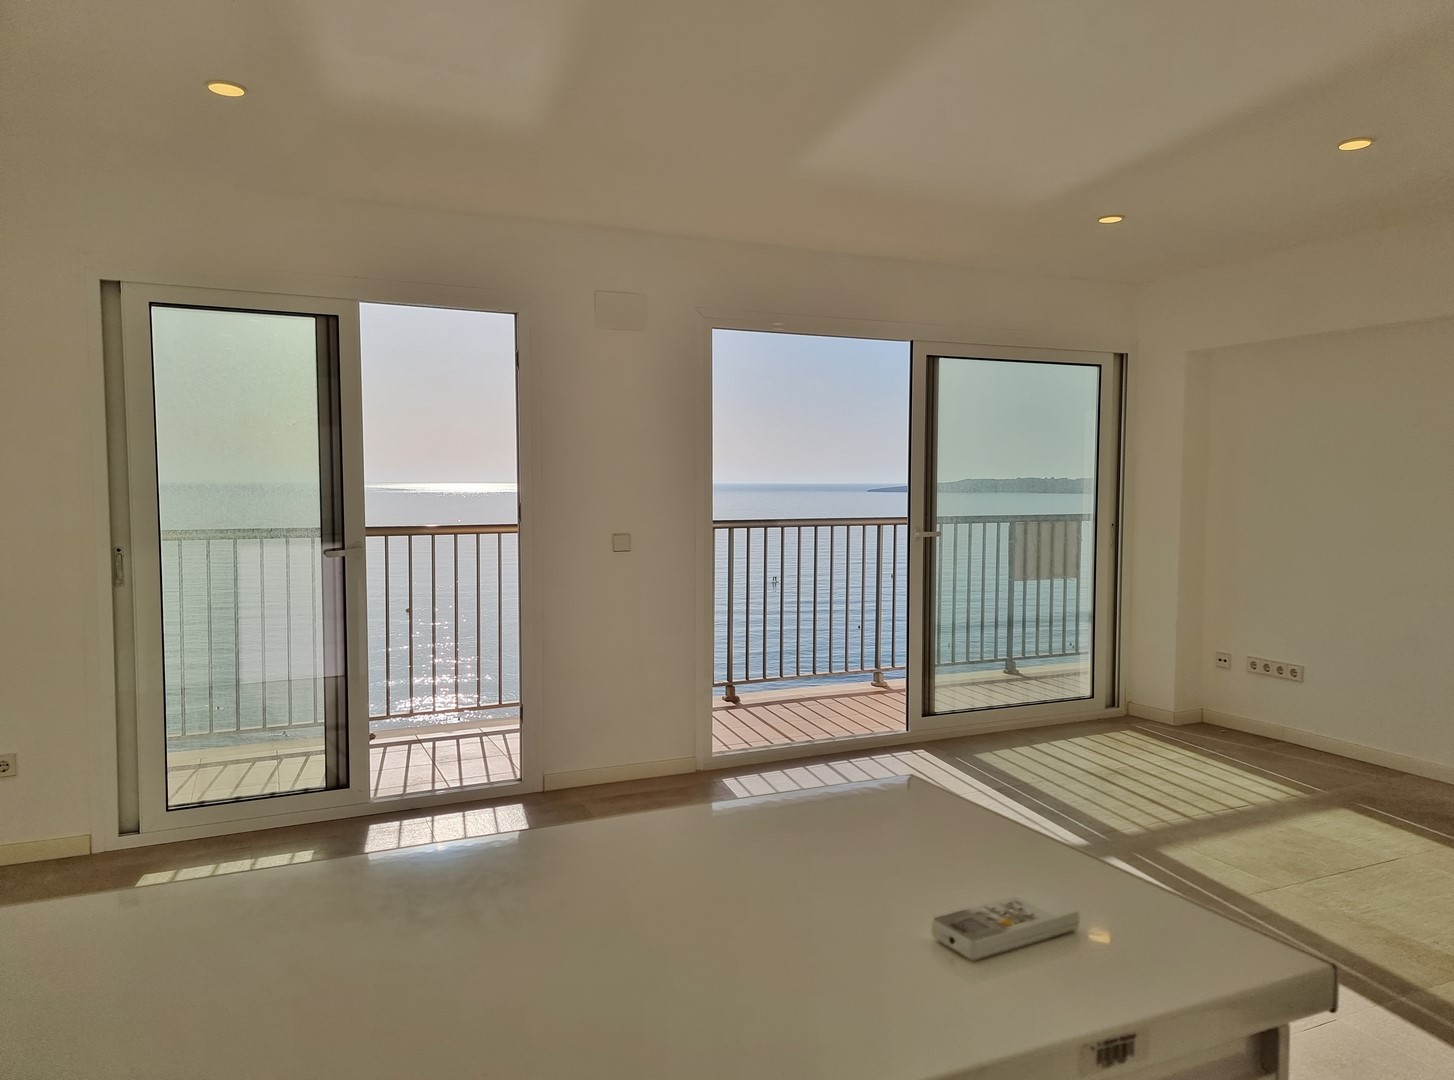 CALA MILLOR: Herrliche Meerblick-Wohnung mit spektakulärem Meer- und Panoramablick aus der 1. Reihe, komplett renoviert